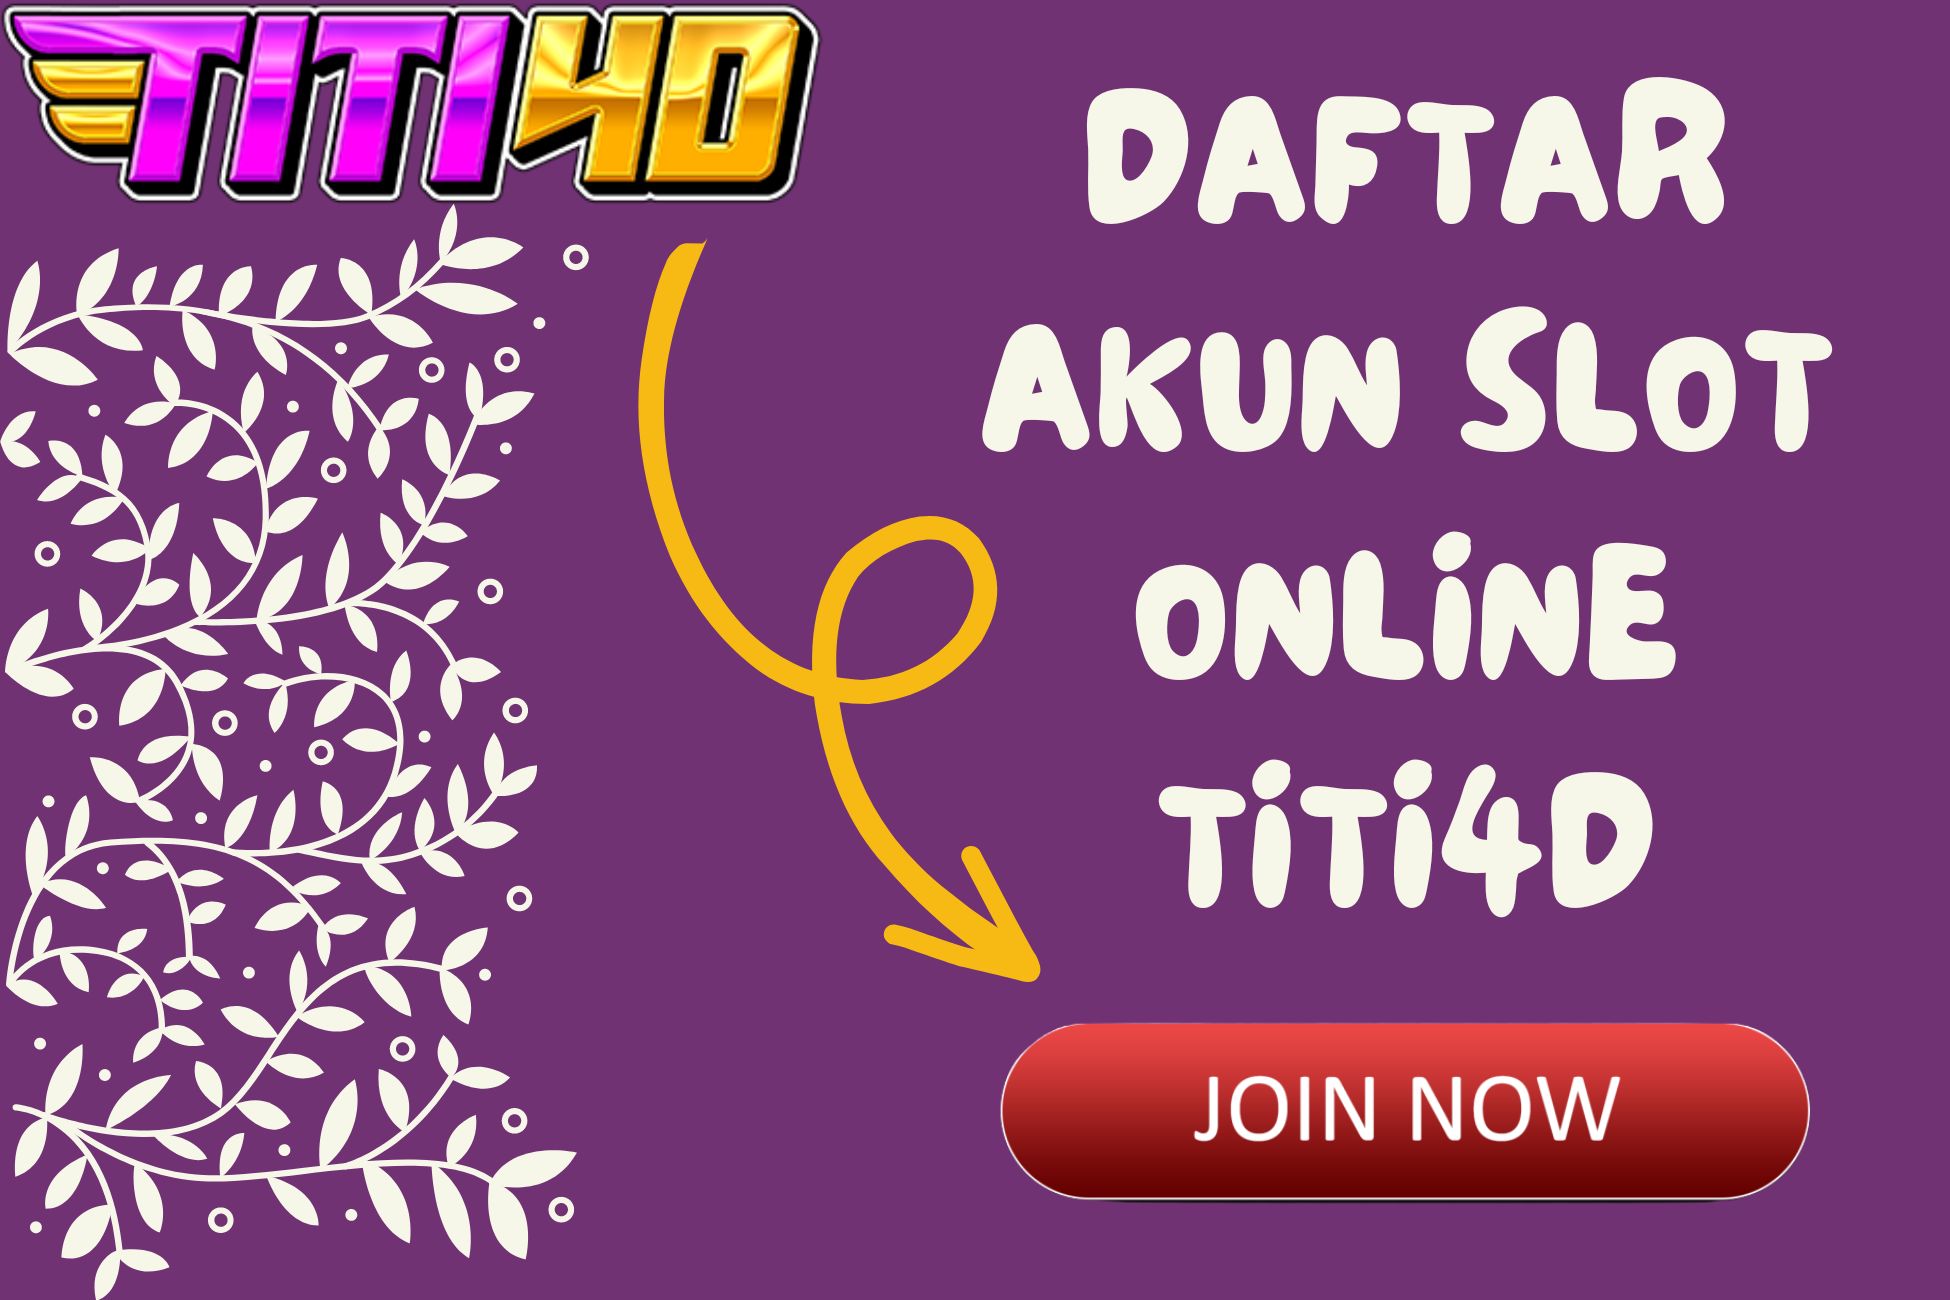 Daftar Akun Slot Online TITI4D